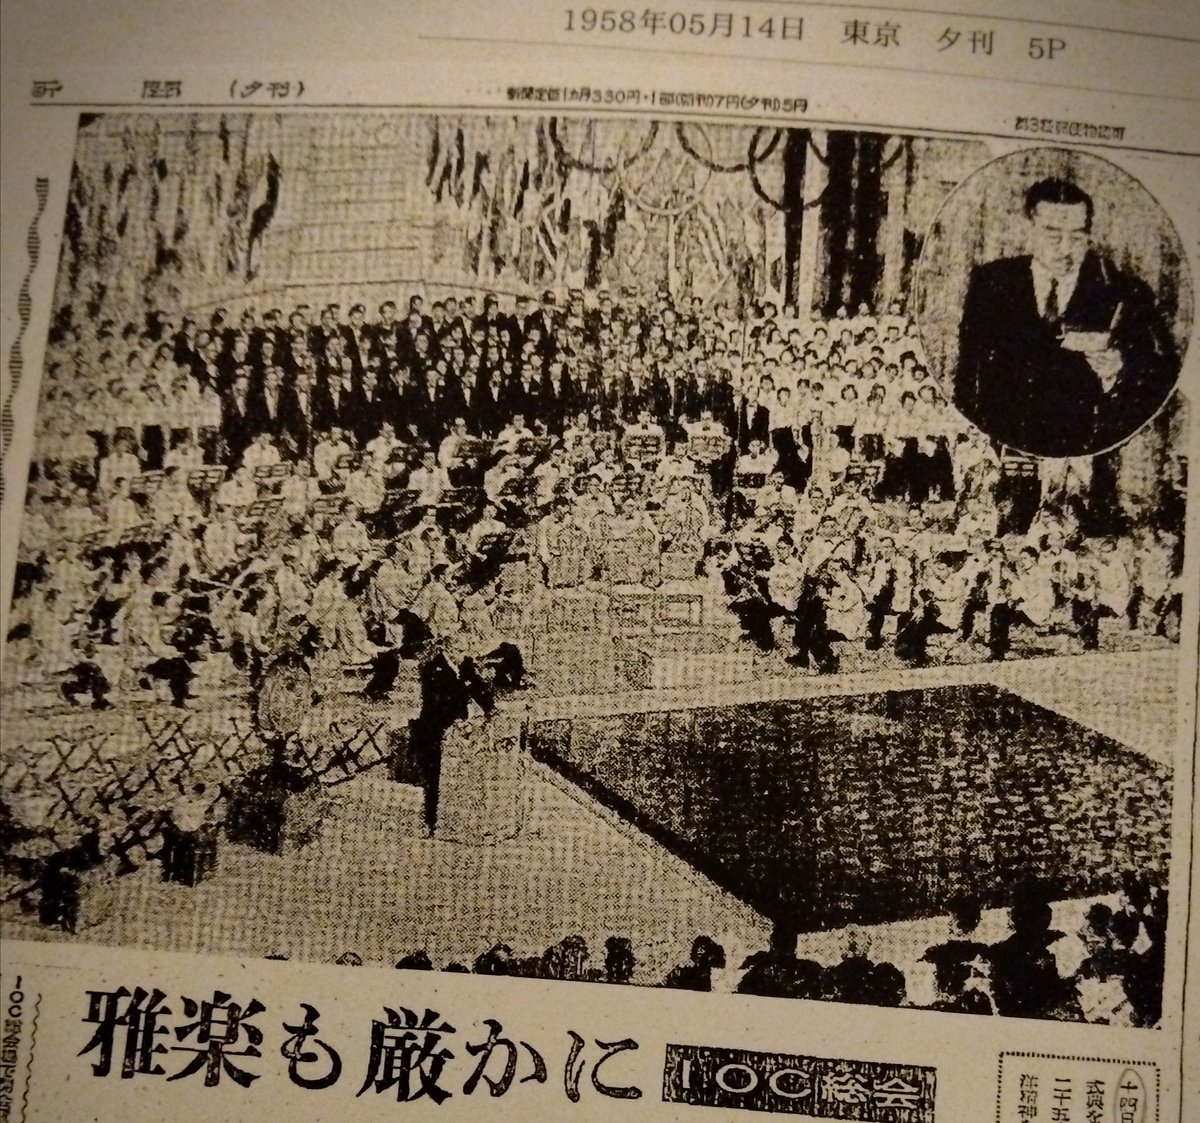 #今日は何の日 

1958年：昭和33年 5月14日。

第54回IOC総会が東京で開催されました。

#田畑政治 #まーちゃん #阿部サダヲ
#東龍太郎 #松重豊
#IOC東京総会
#1964年東京オリンピック
#いだてん